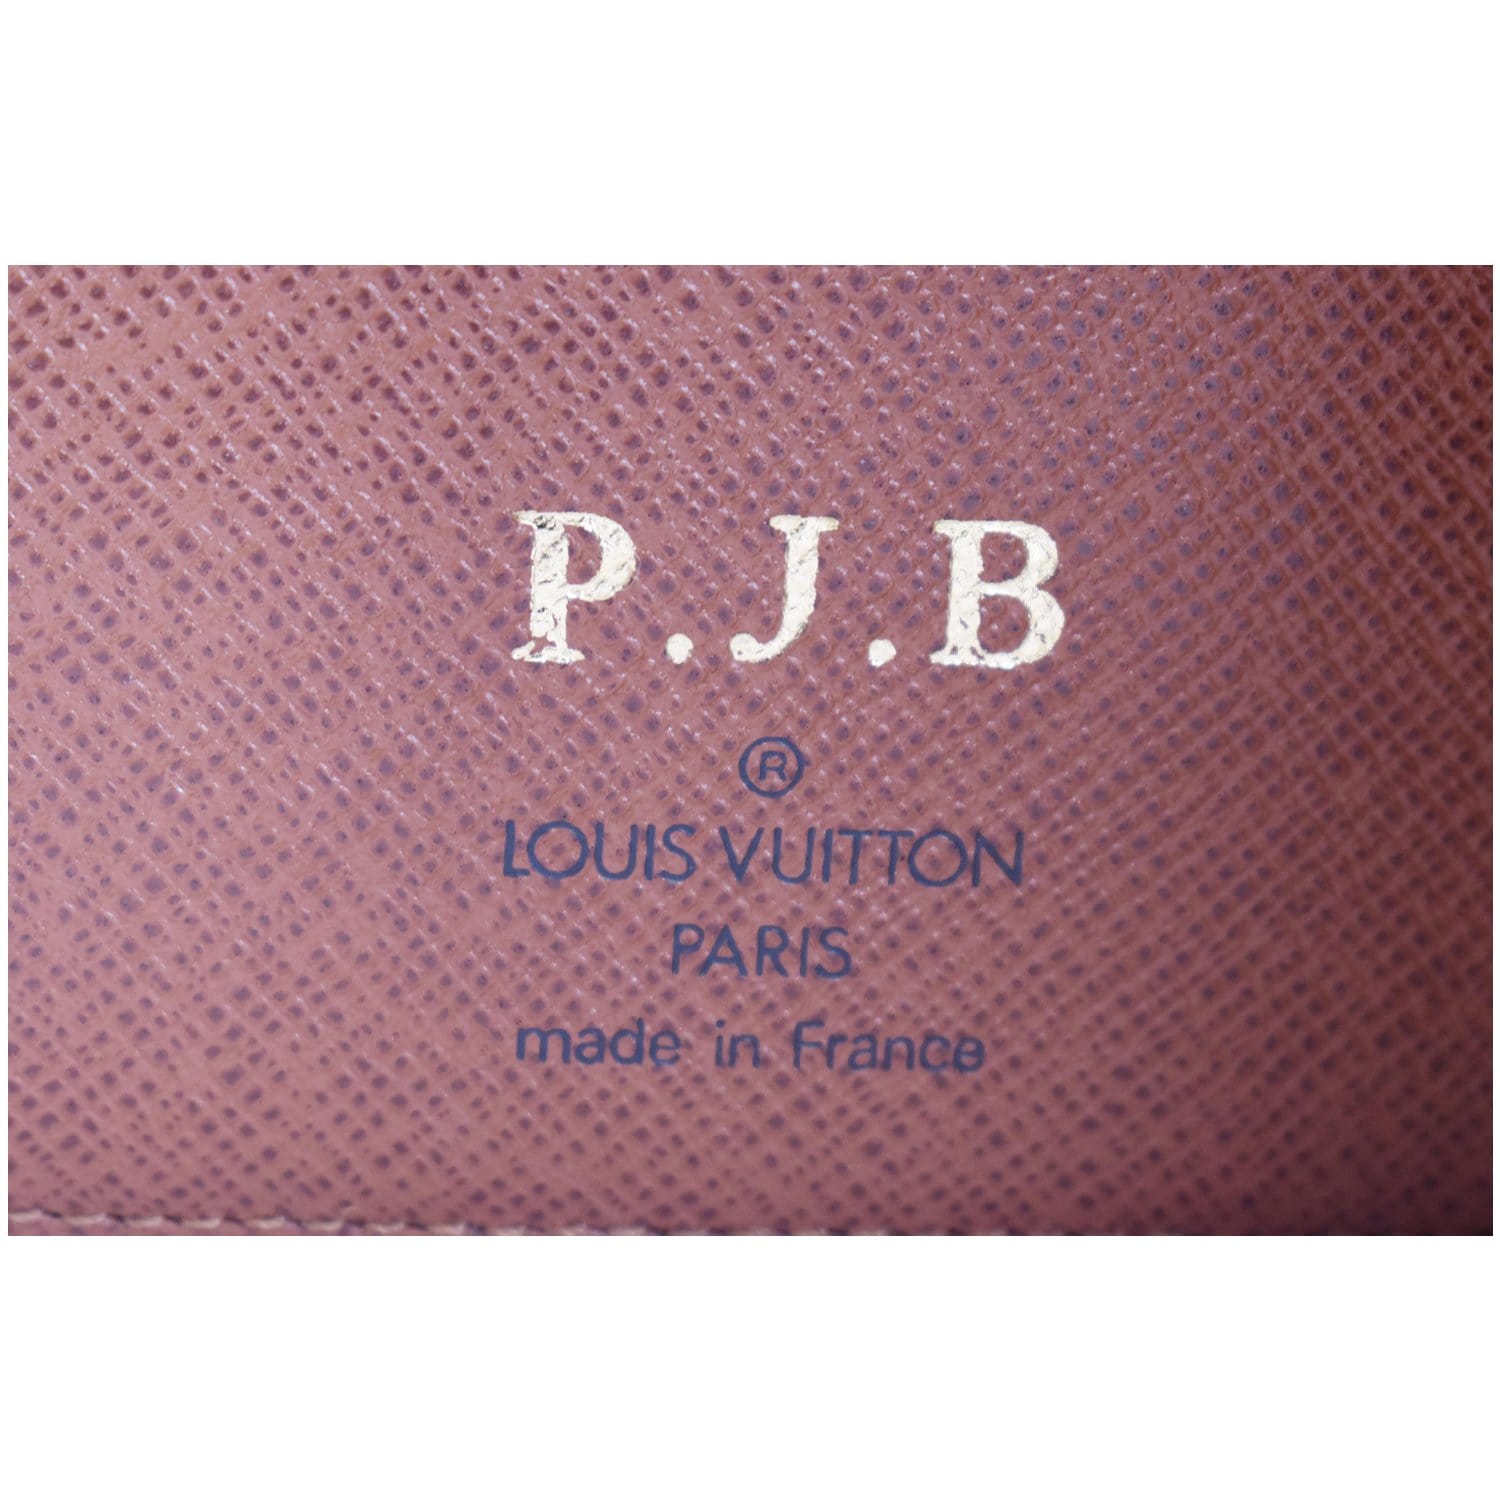 Louis-Vuitton-Monogram-Set-of-2-Agenda-PM-Planner-Cover-R20005